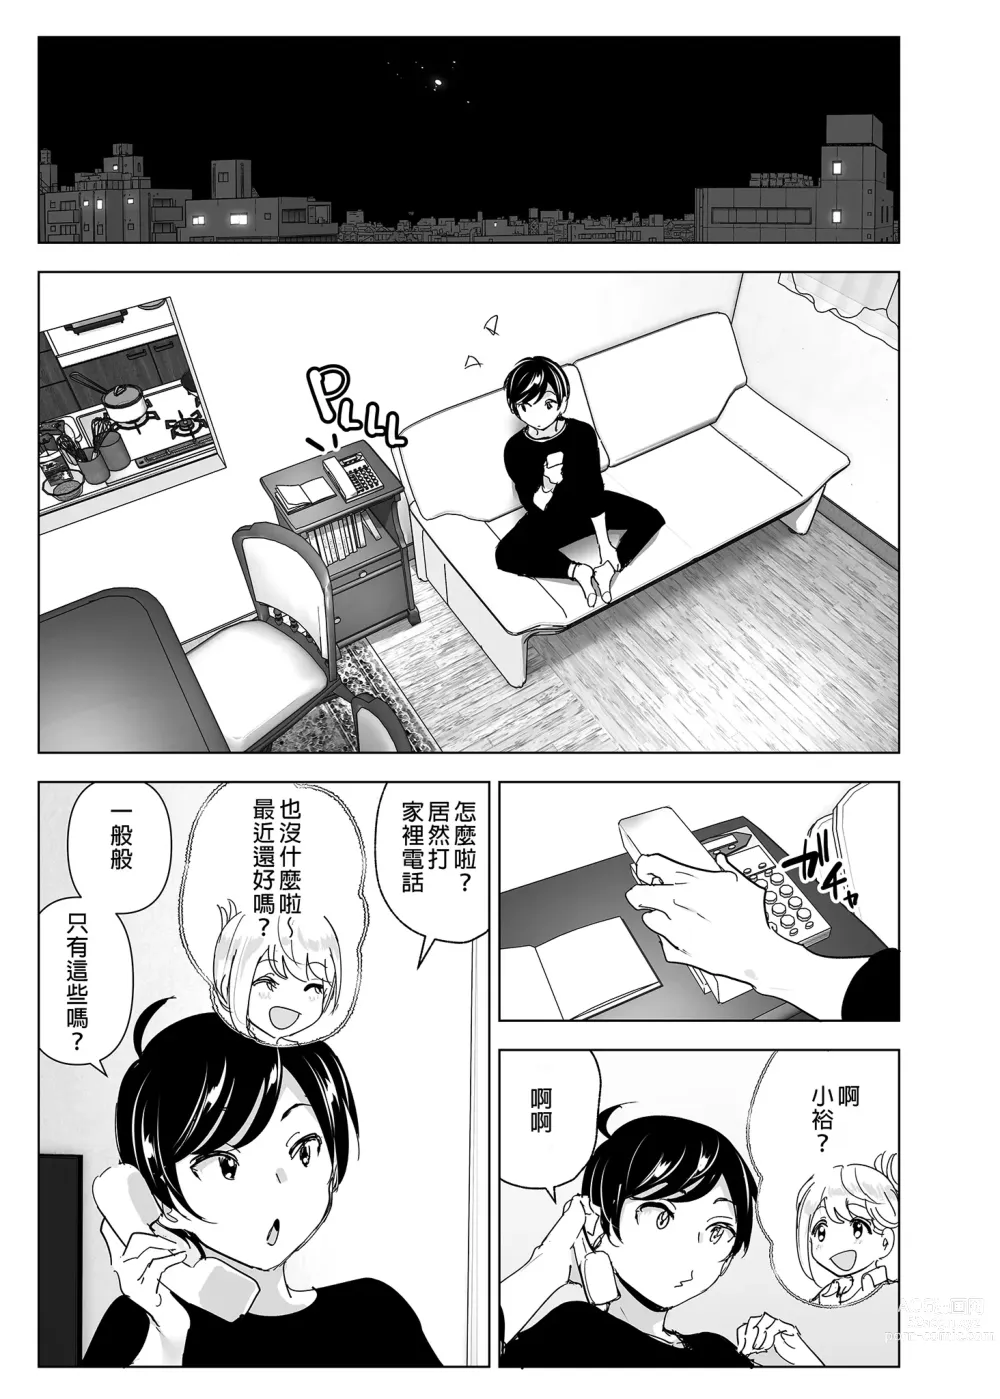 Page 3 of doujinshi 從前很快樂 (decensored)